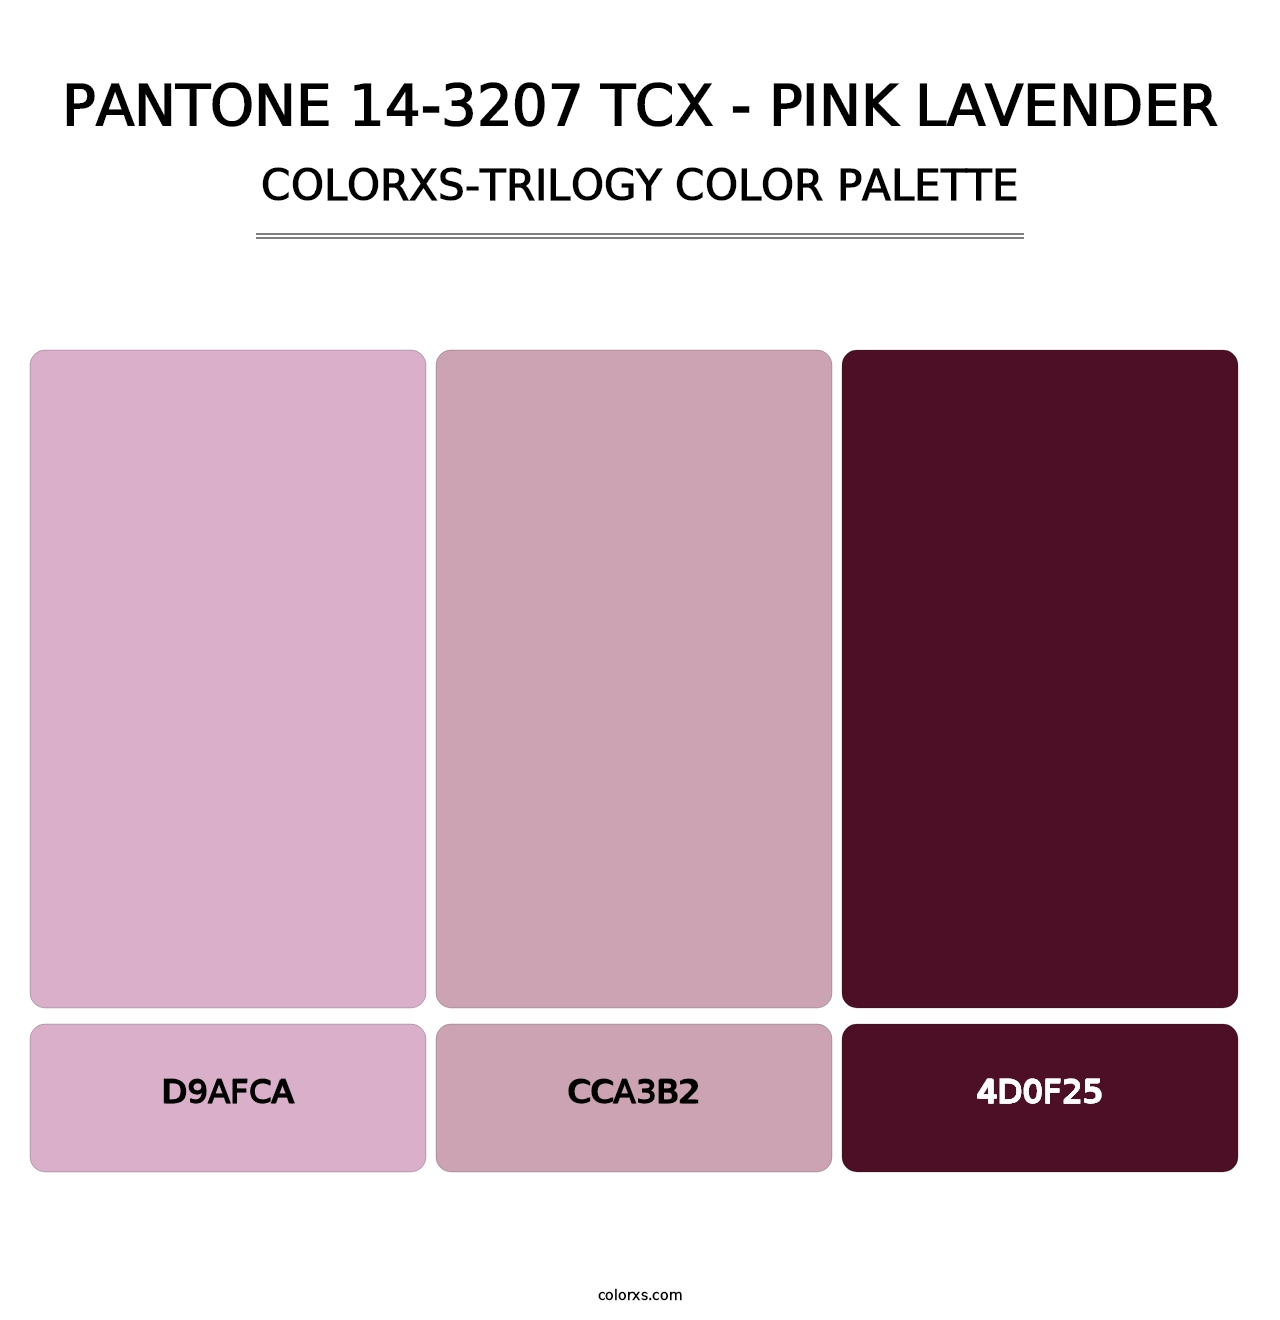 PANTONE 14-3207 TCX - Pink Lavender - Colorxs Trilogy Palette